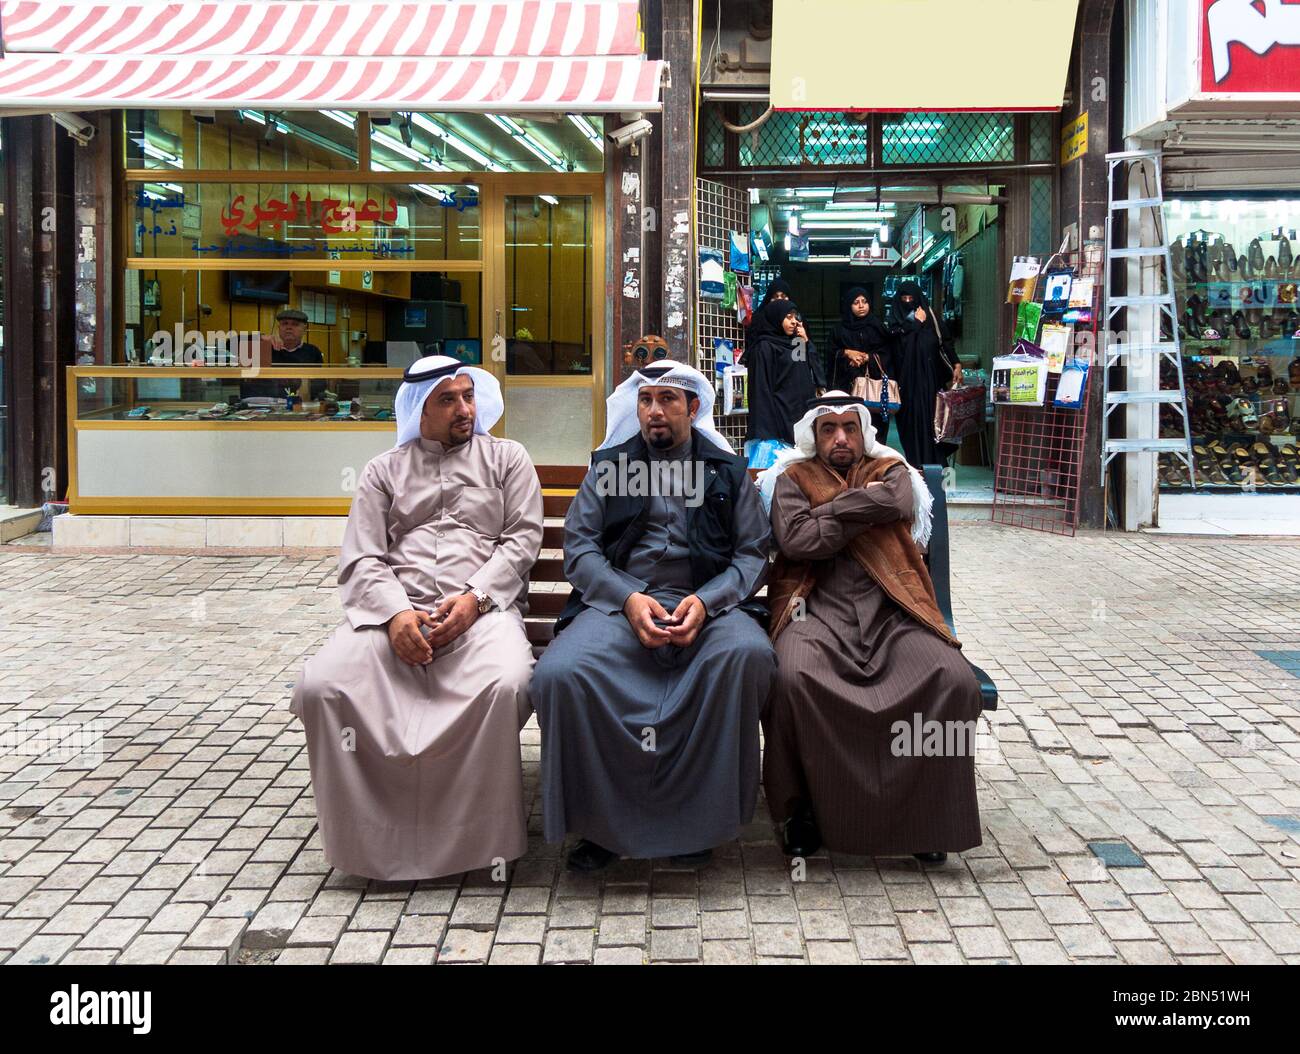 Kuwait-Stadt, Kuwait: Drei arabische Männer sitzen in der Nähe in traditioneller Kleidung Stockfoto